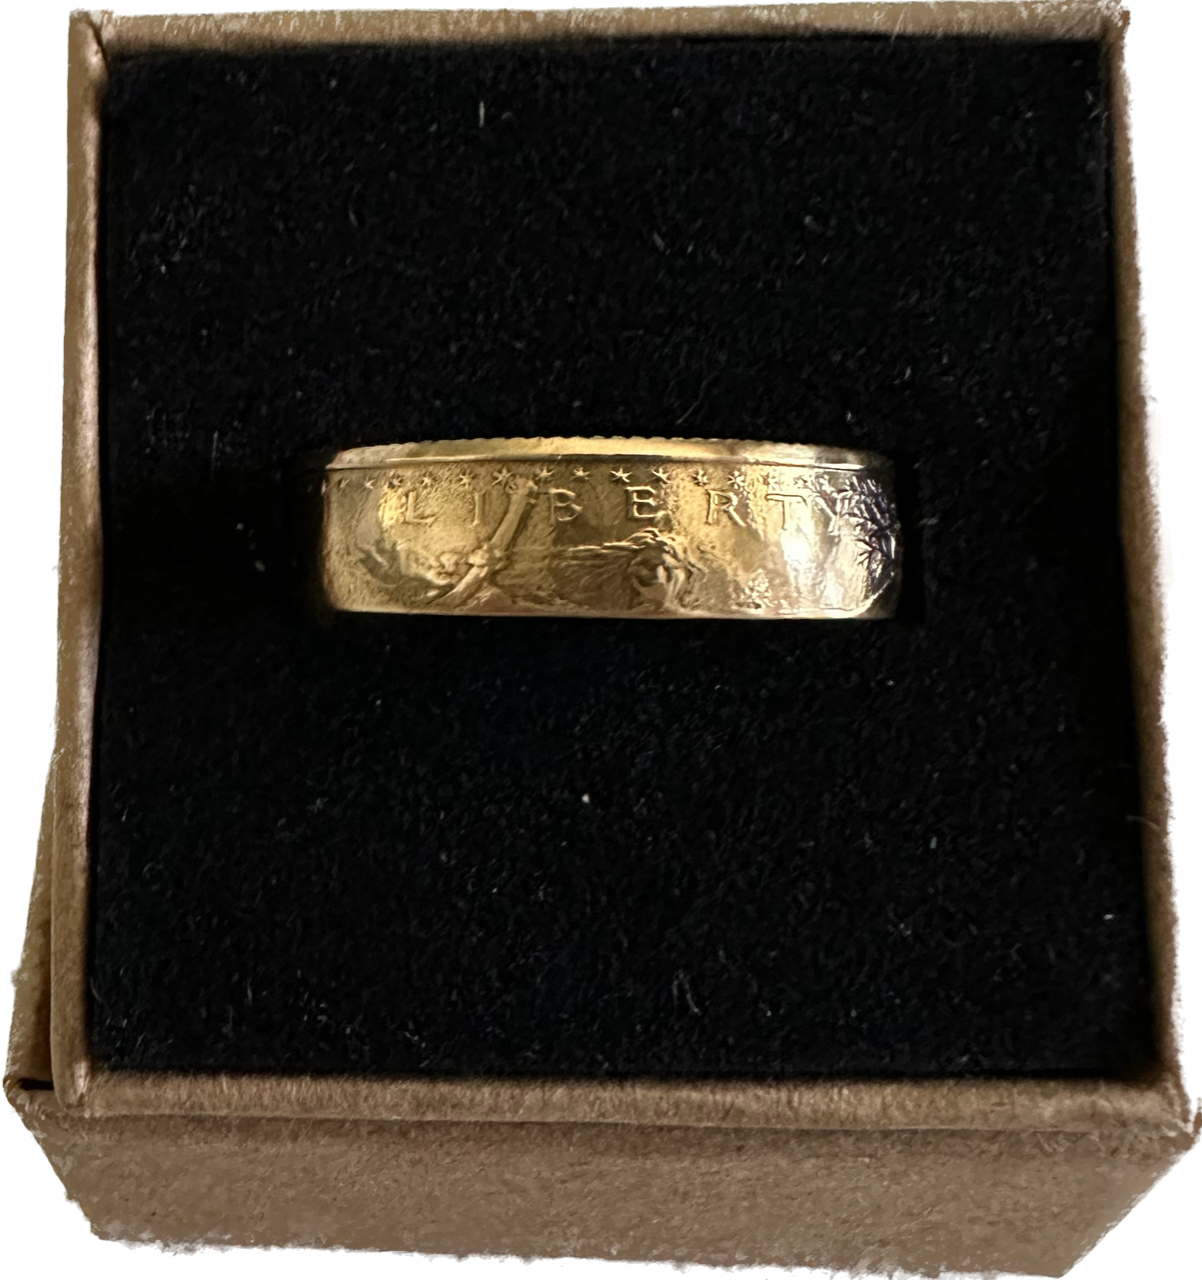 U.S. Gold Eagle 1/4 oz Fine Gold Ring